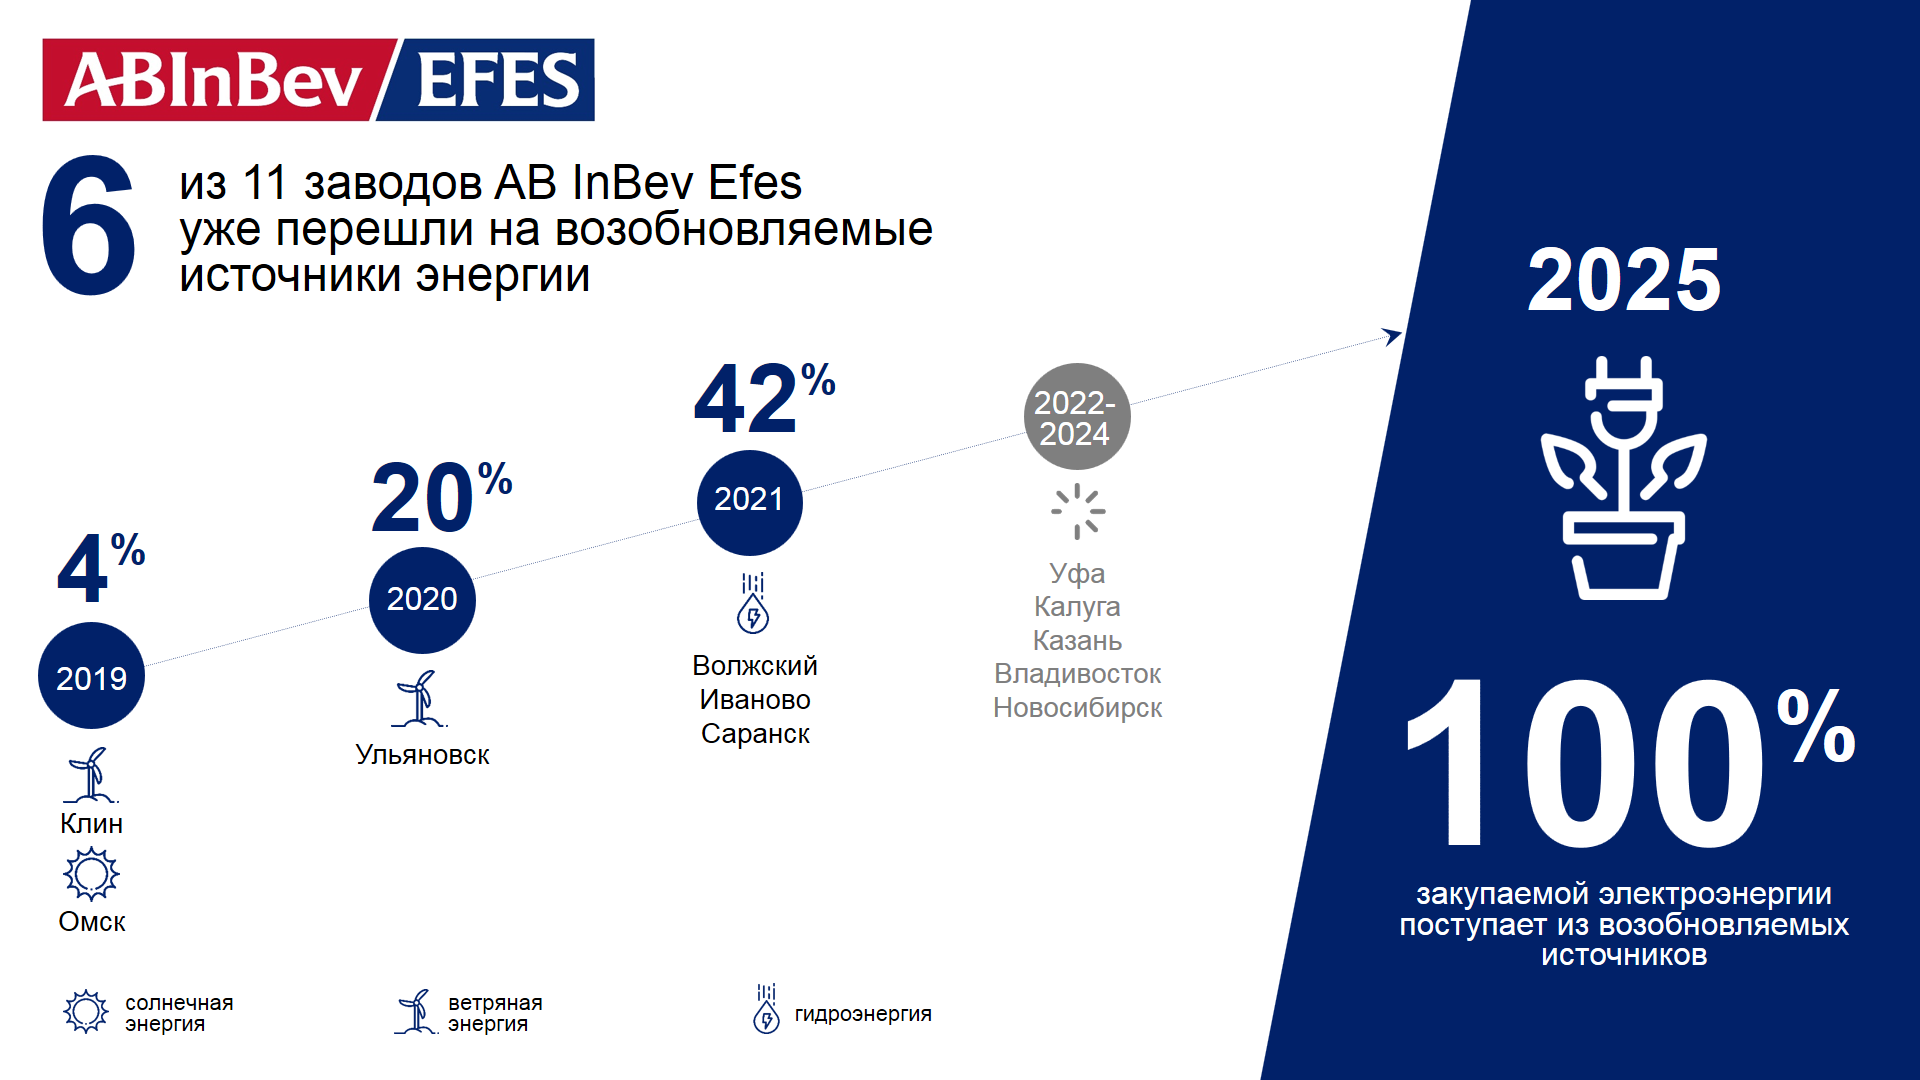 Больше половины заводов AB InBev Efes перешли на возобновляемые источники энергии - фото 1